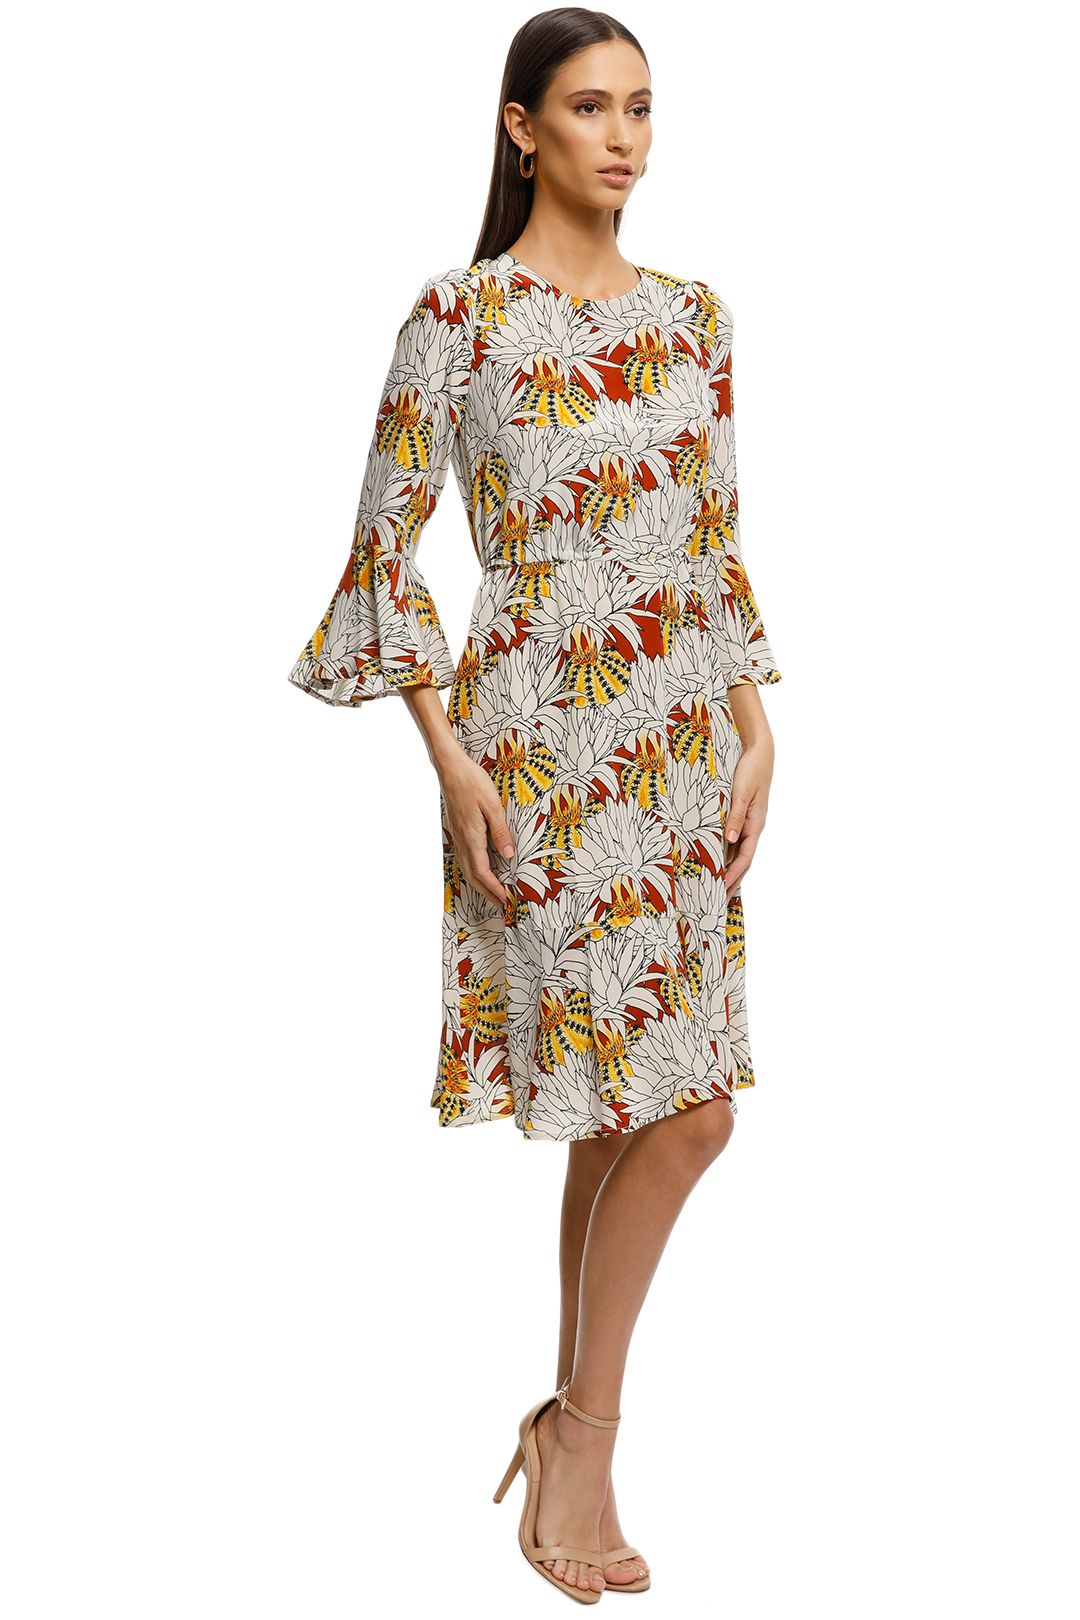 Gorman - Pumpkin Flower Silk Dress - Print - Side